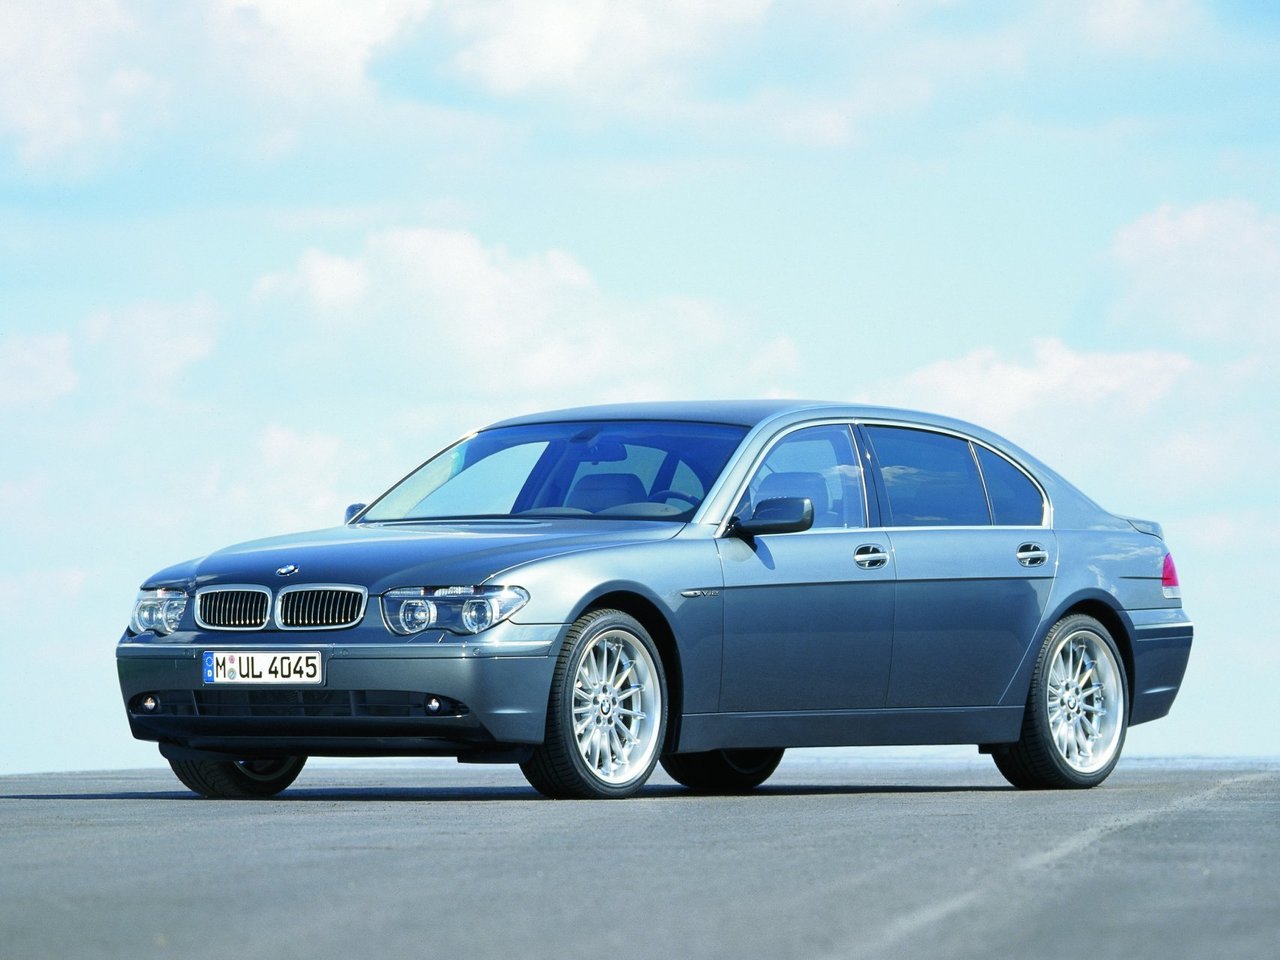 Расход газа четырёх комплектаций седана Long BMW 7 серия. Разница стоимости заправки газом и бензином. Автономный пробег до и после установки ГБО.